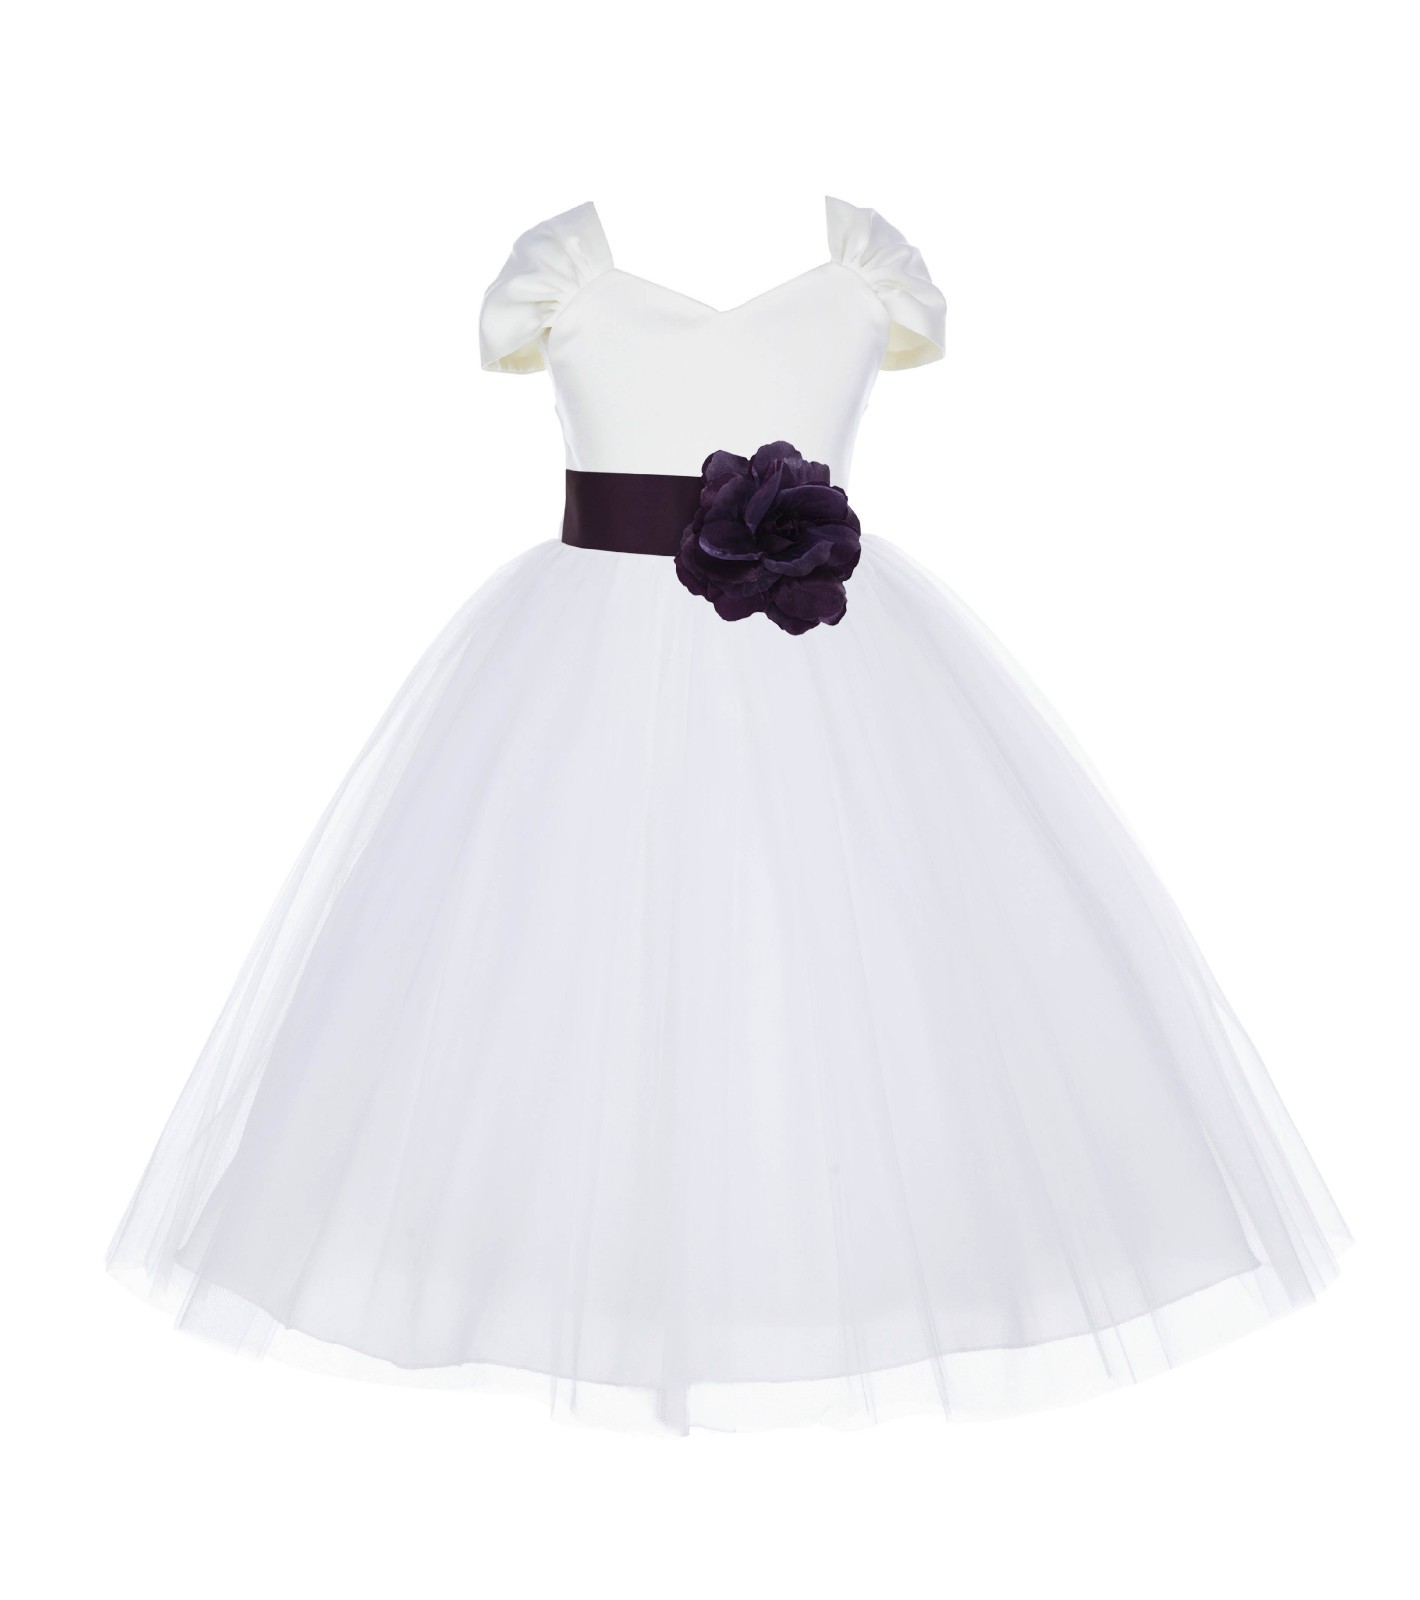 Ivory/Plum V-shaped Neckline Short Sleeves Tulle Flower Girl Dress 154S